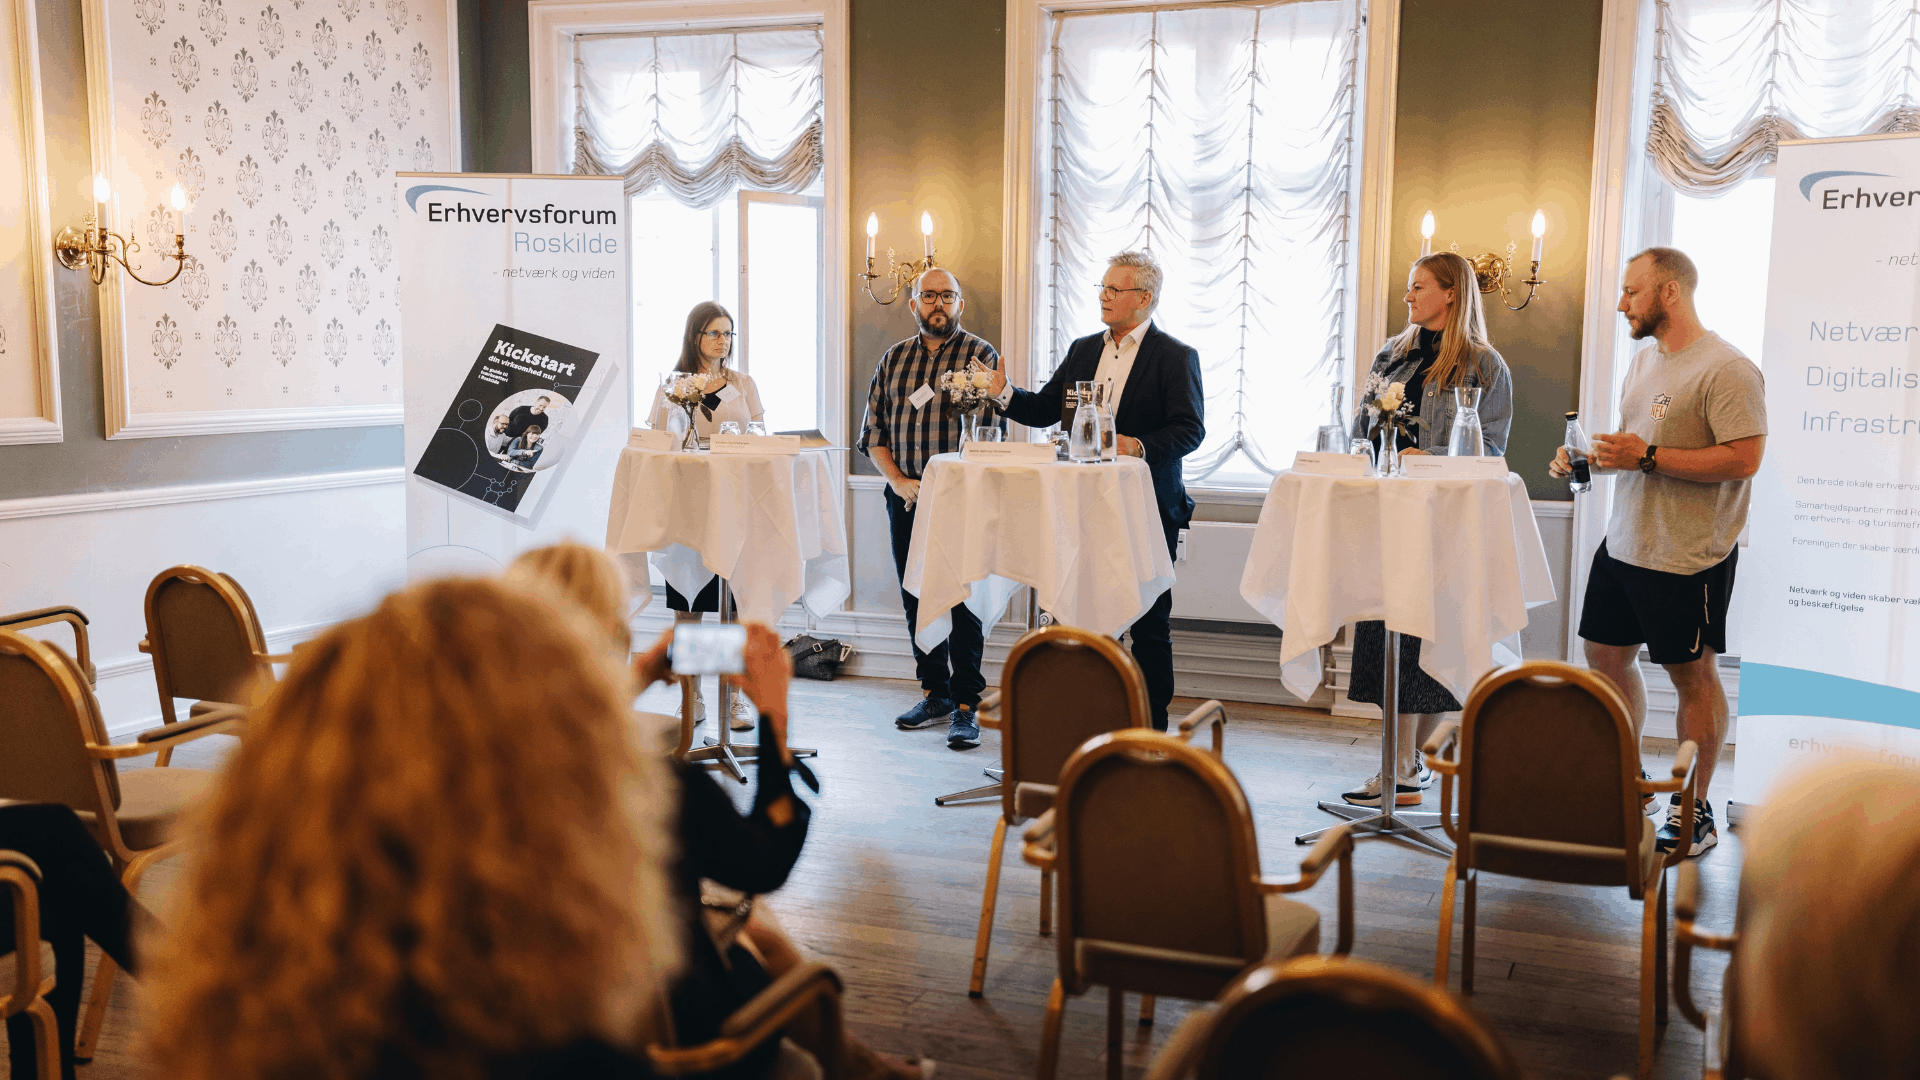 Ny iværksætterbog - kickstart din virksomhed nu, Roskilde bobler af iværksætterglæde - lancering af vores nye iværksætterbog "Kickstart din virksomhed nu", Martin Sattrup Christensen